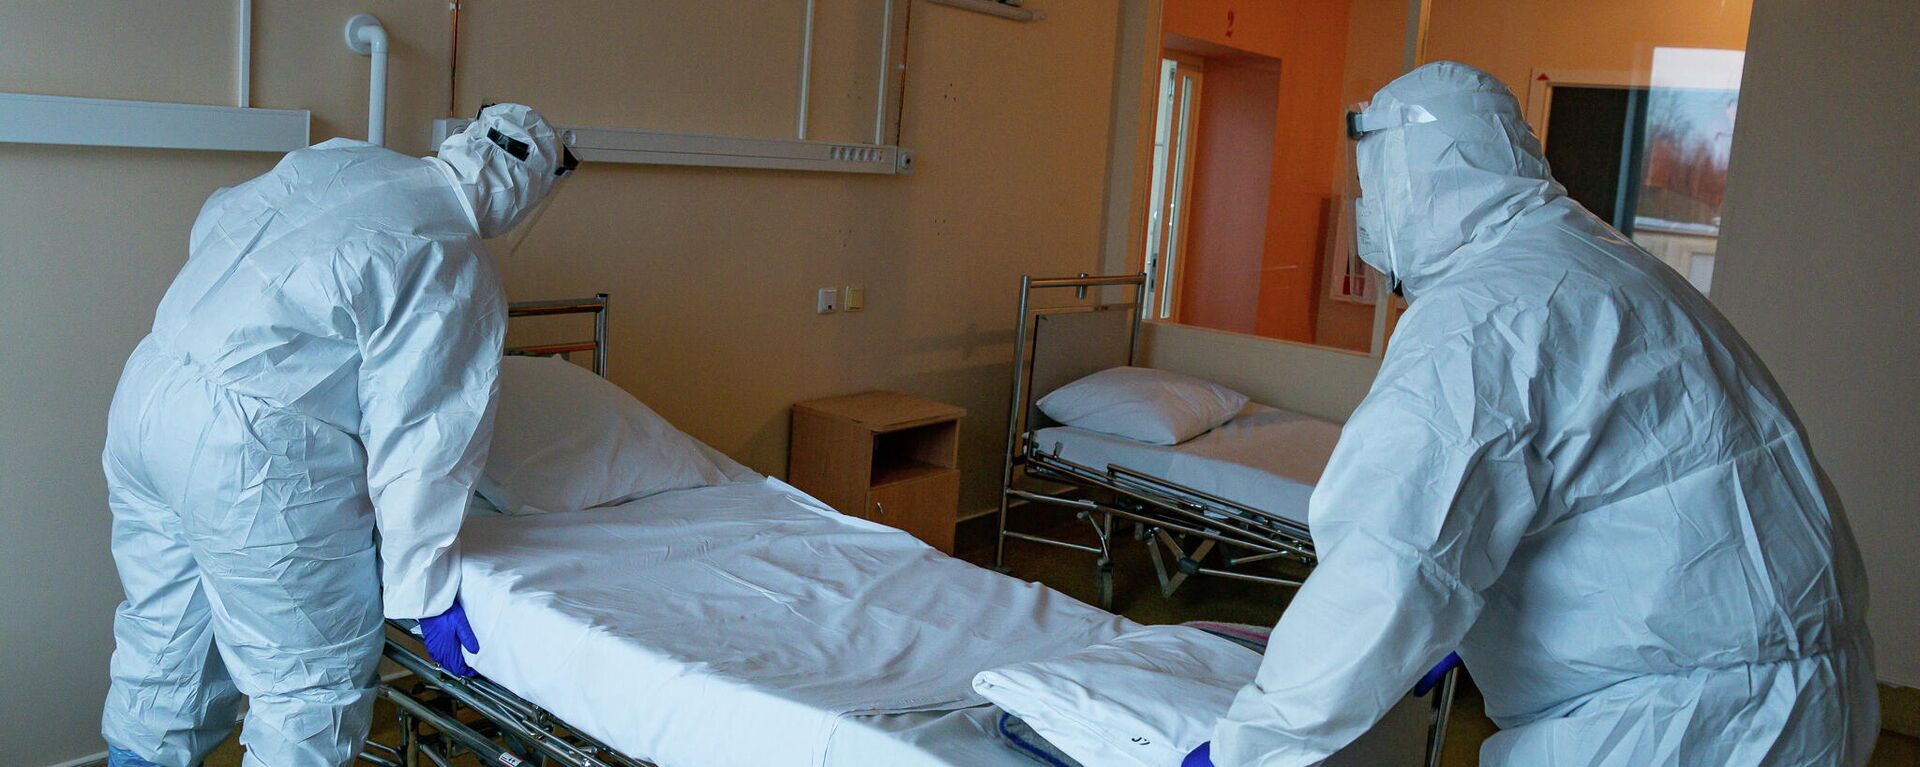 Медицинские работники готовят палату к приему пациентов с COVID-19 в Центре легочных заболеваний и туберкулеза в Даугавпилсе - Sputnik Латвия, 1920, 17.11.2021